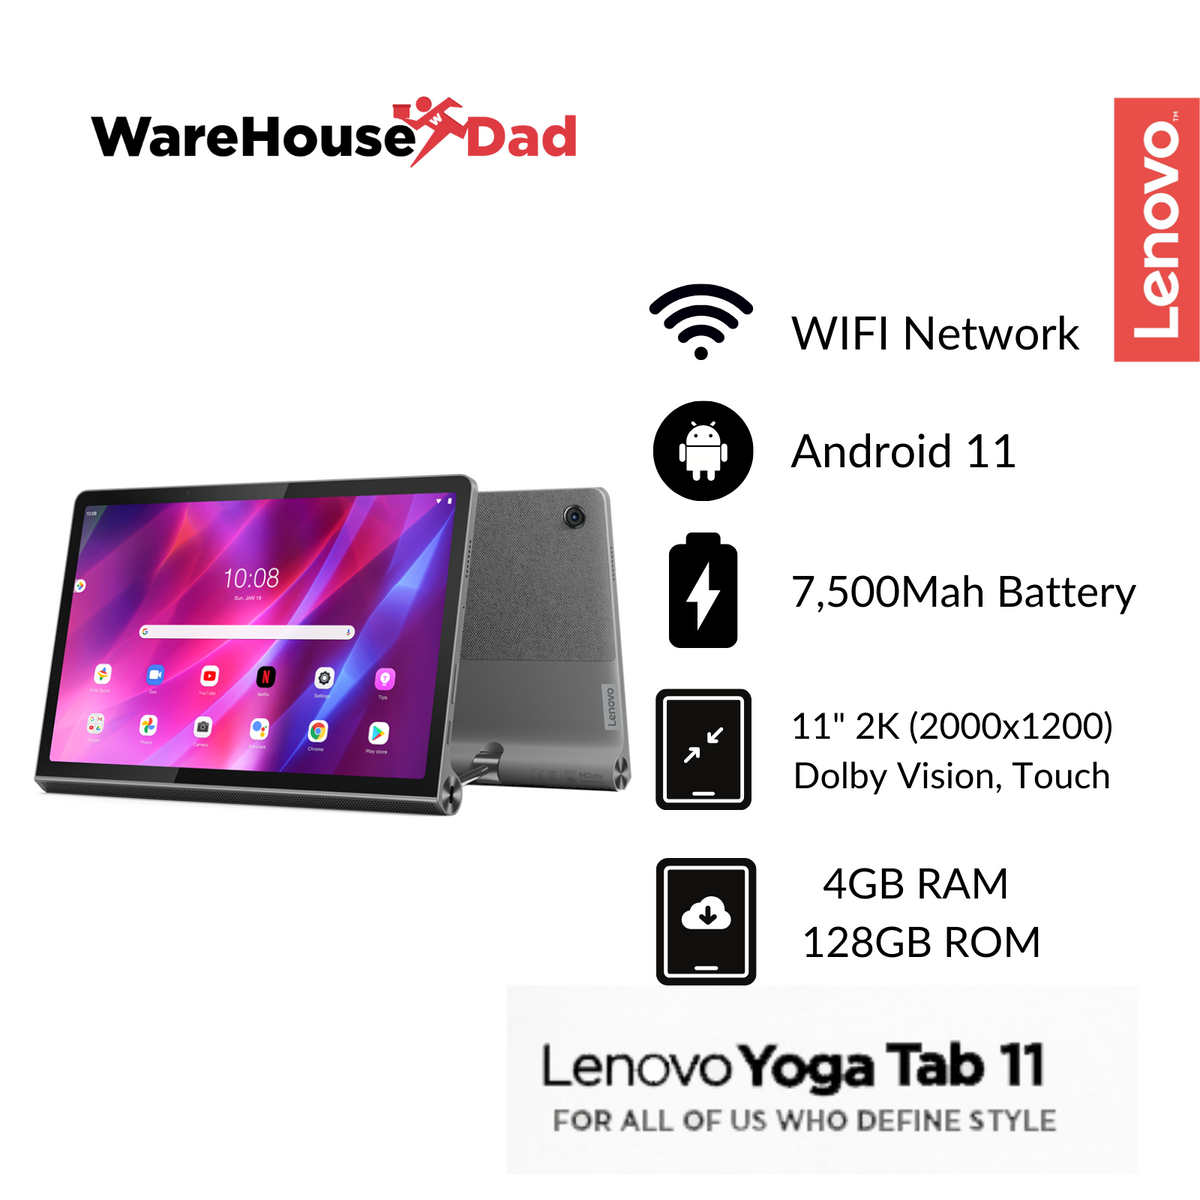 Lenovo Yoga Tab 11 wifi 128g android